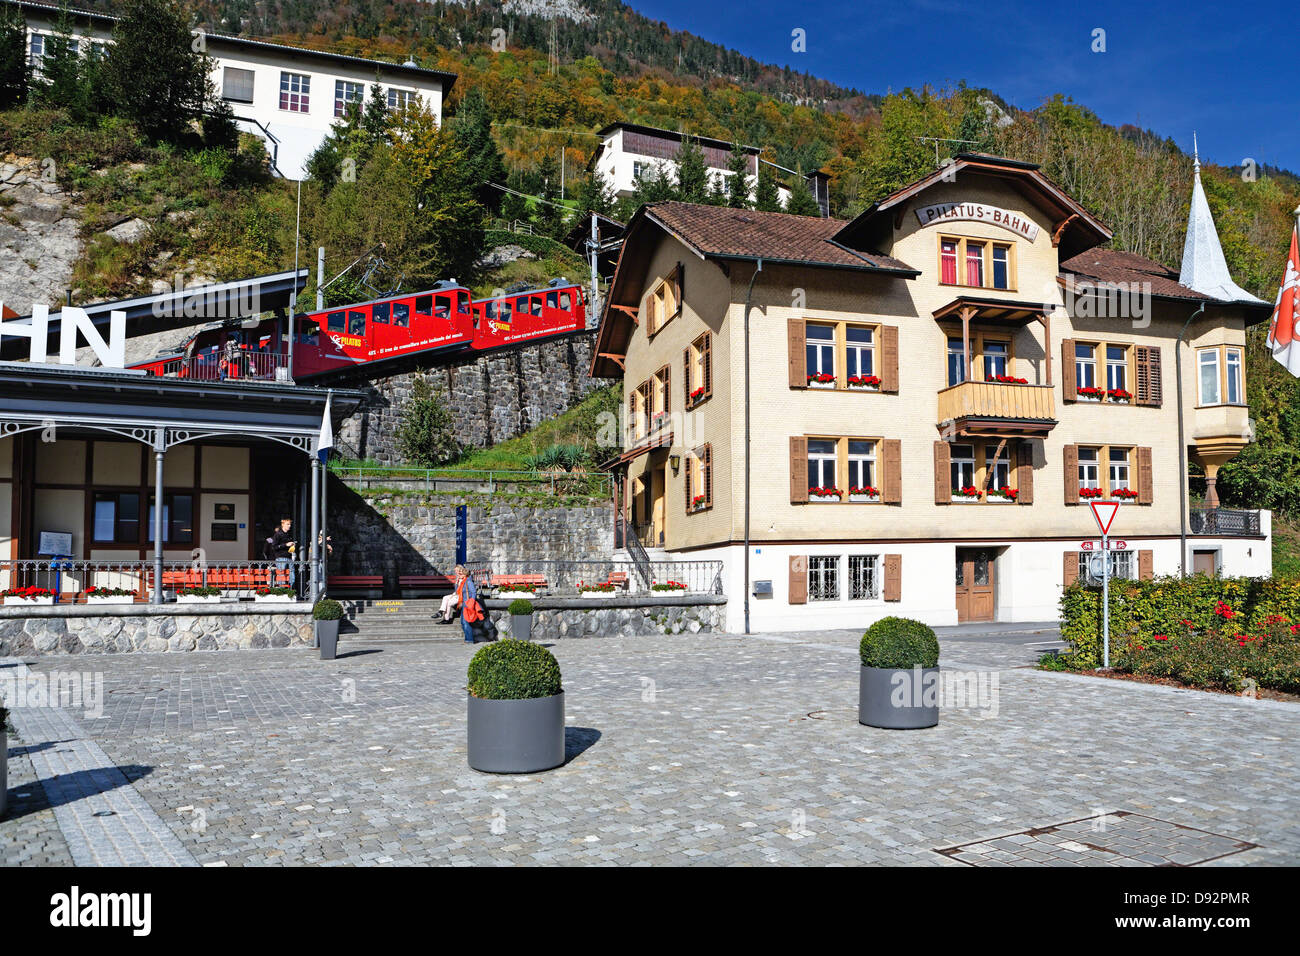 La gare de chemin de montagne Pilatus, Giswil, Suisse Banque D'Images